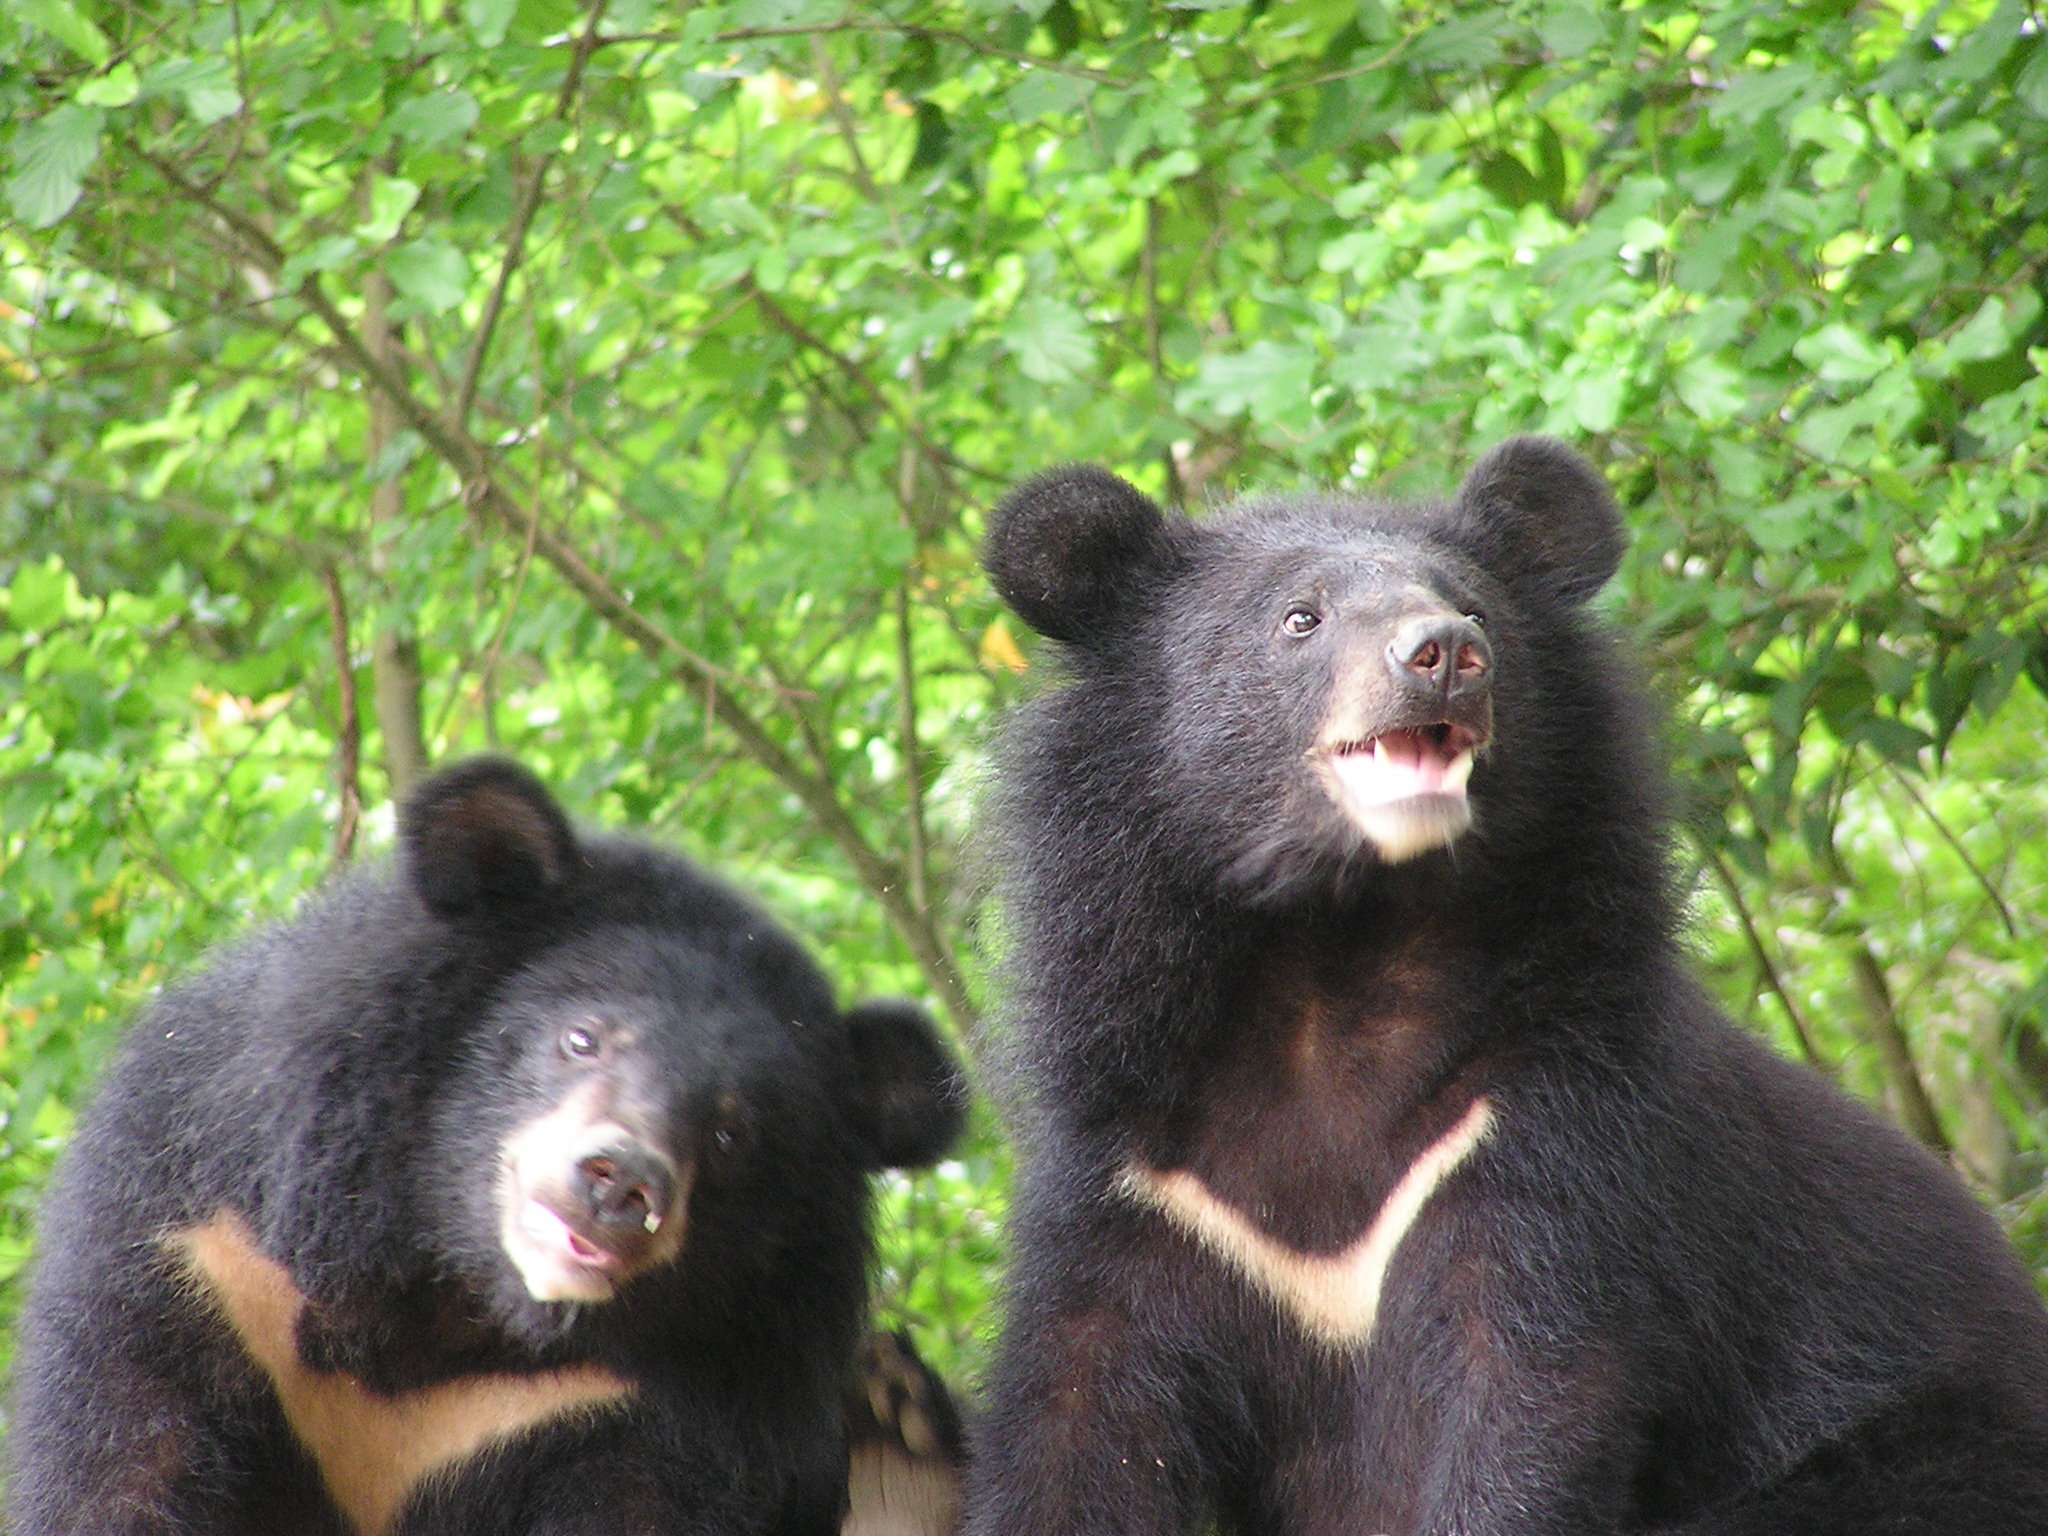 臺灣黑熊屬亞洲黑熊的七個亞種之一